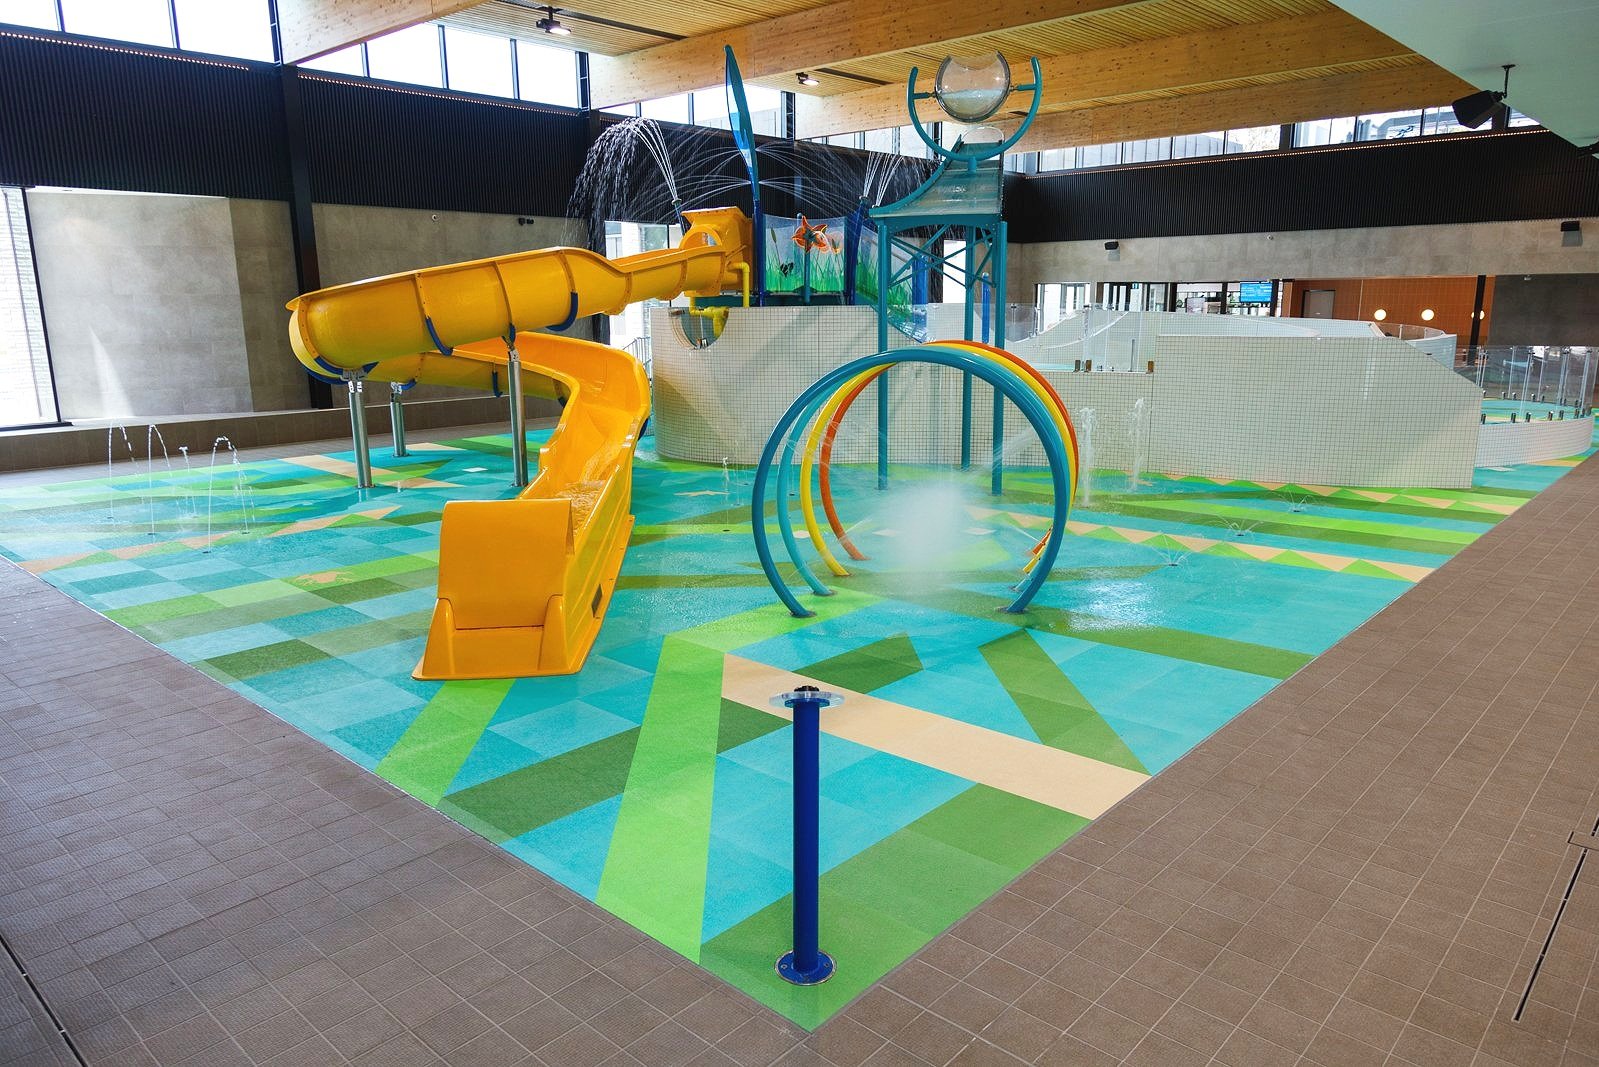 Northcote Aquatic and Recreation Centre